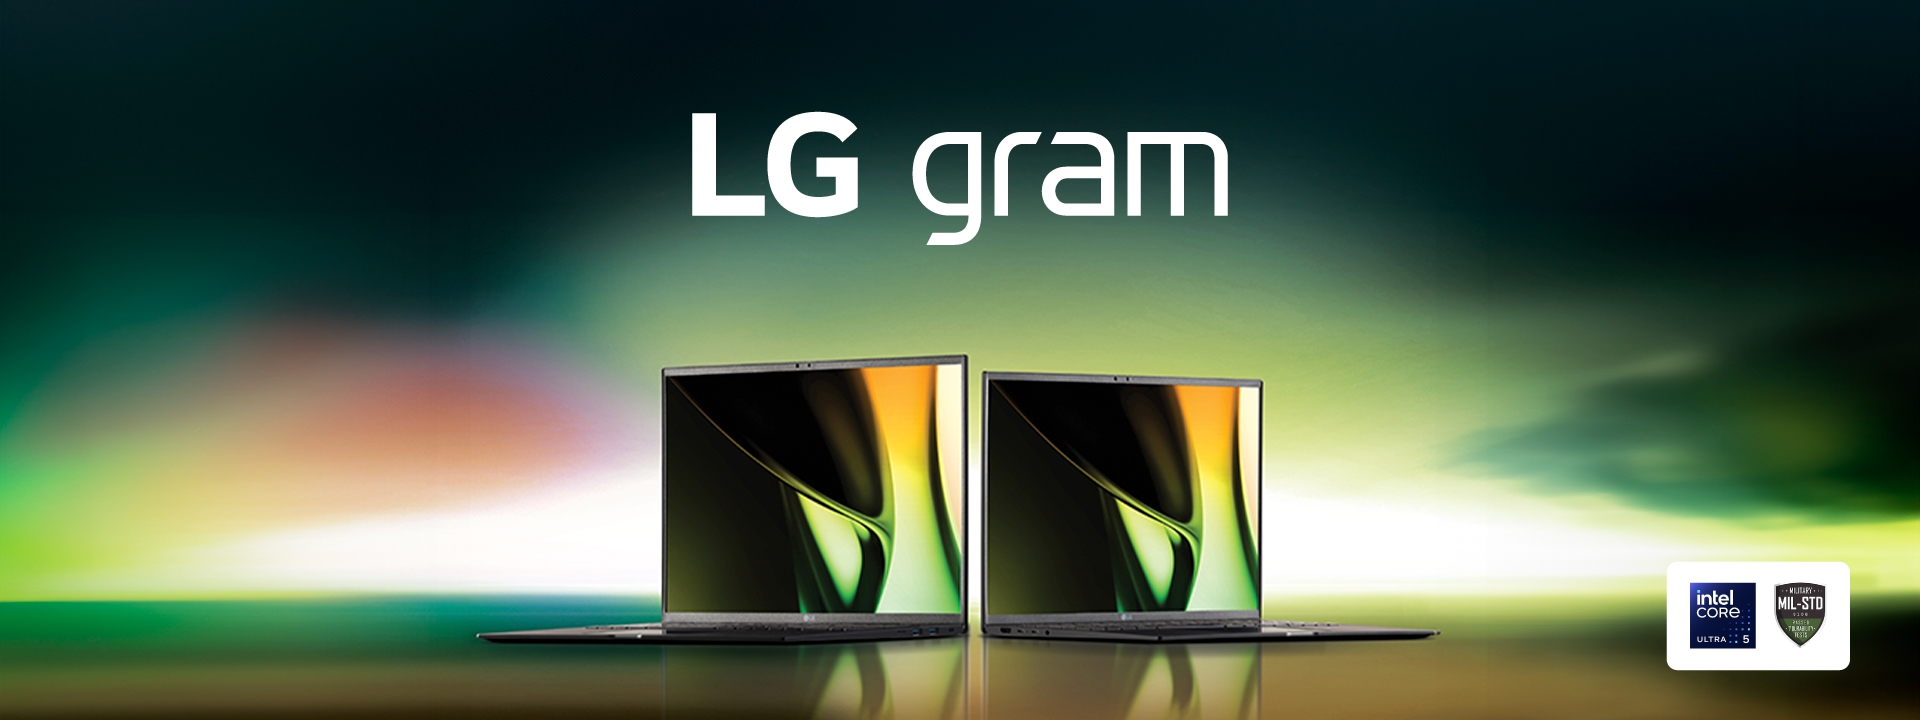 โปรสุดคุ้ม! ซื้อแล็ปท็อป LG gram และ LG gram Pro รับฟรีสมาร์ทมอนิเตอร์และของแถมร่วมหมื่น วันนี้ถึง 25 พ.ค. 67